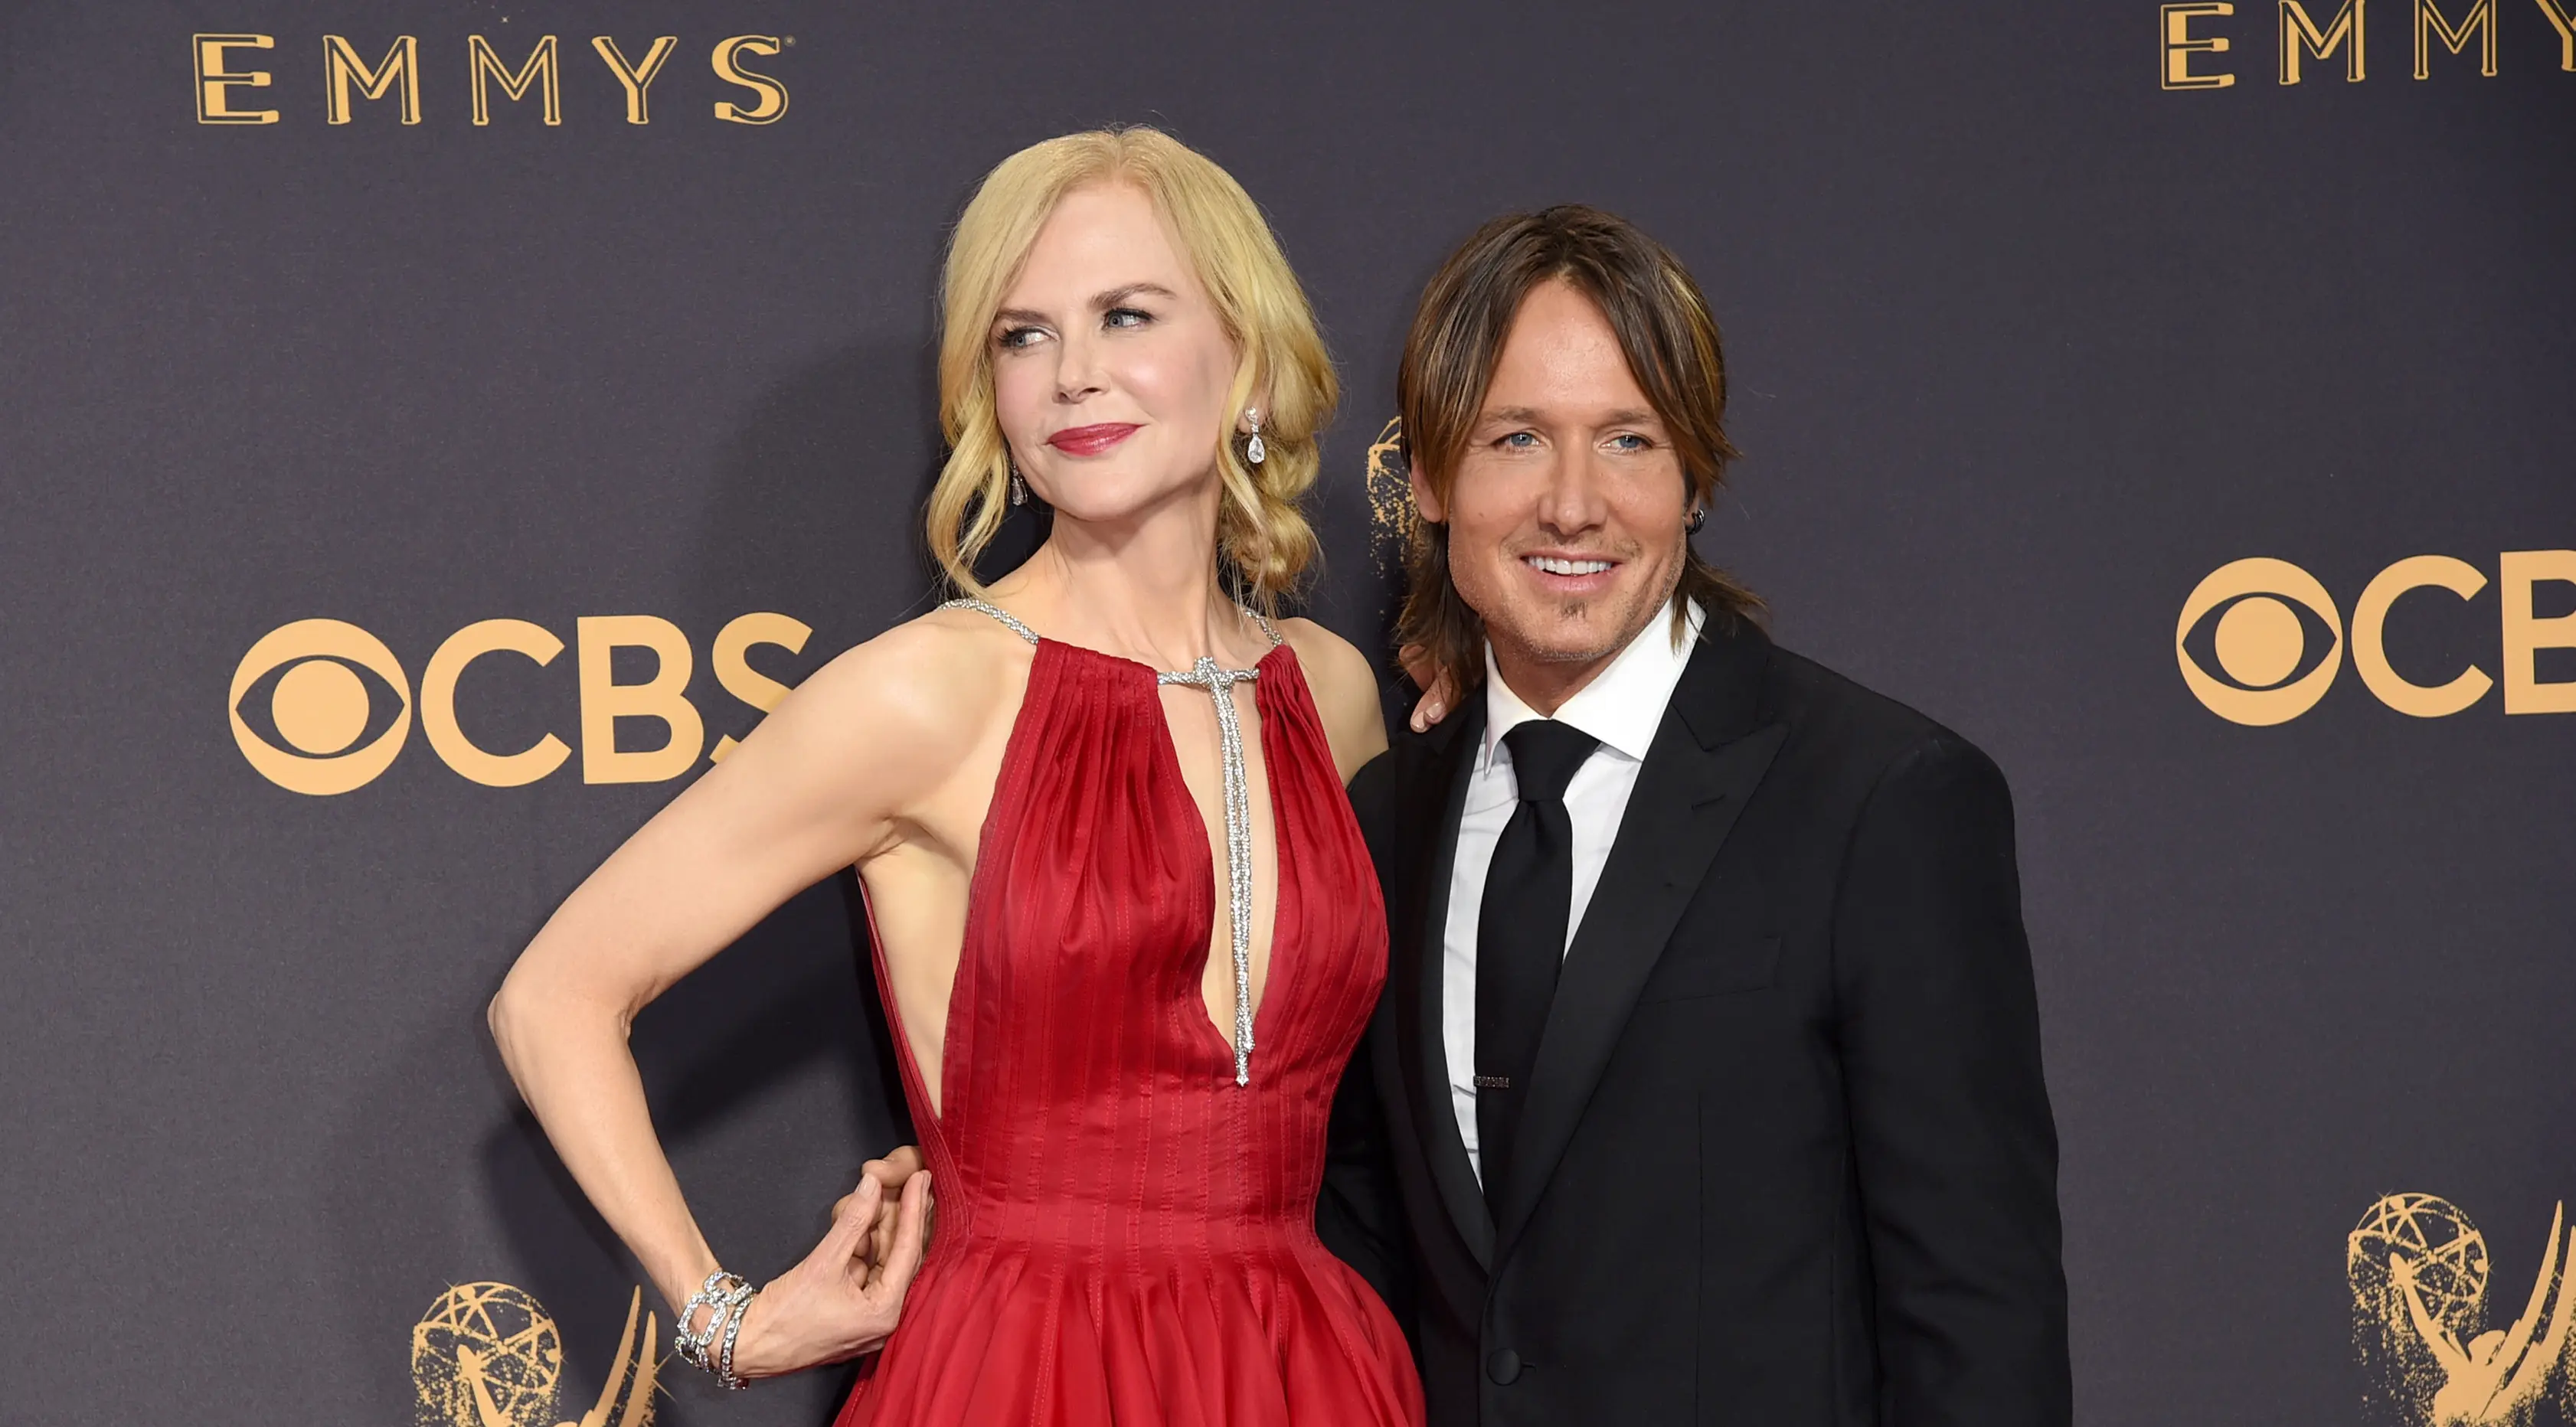 Pasangan selebriti, Nicole Kidman dan Keith Urban berpose di karpet merah ajang penghargaan Emmy Awards 2017 di Los Angeles, Minggu (17/9). Walau sudah 11 tahun menikah, pasangan aktris dan musisi ini selalu terlihat mesra. (Richard Shotwell/Invision/AP)